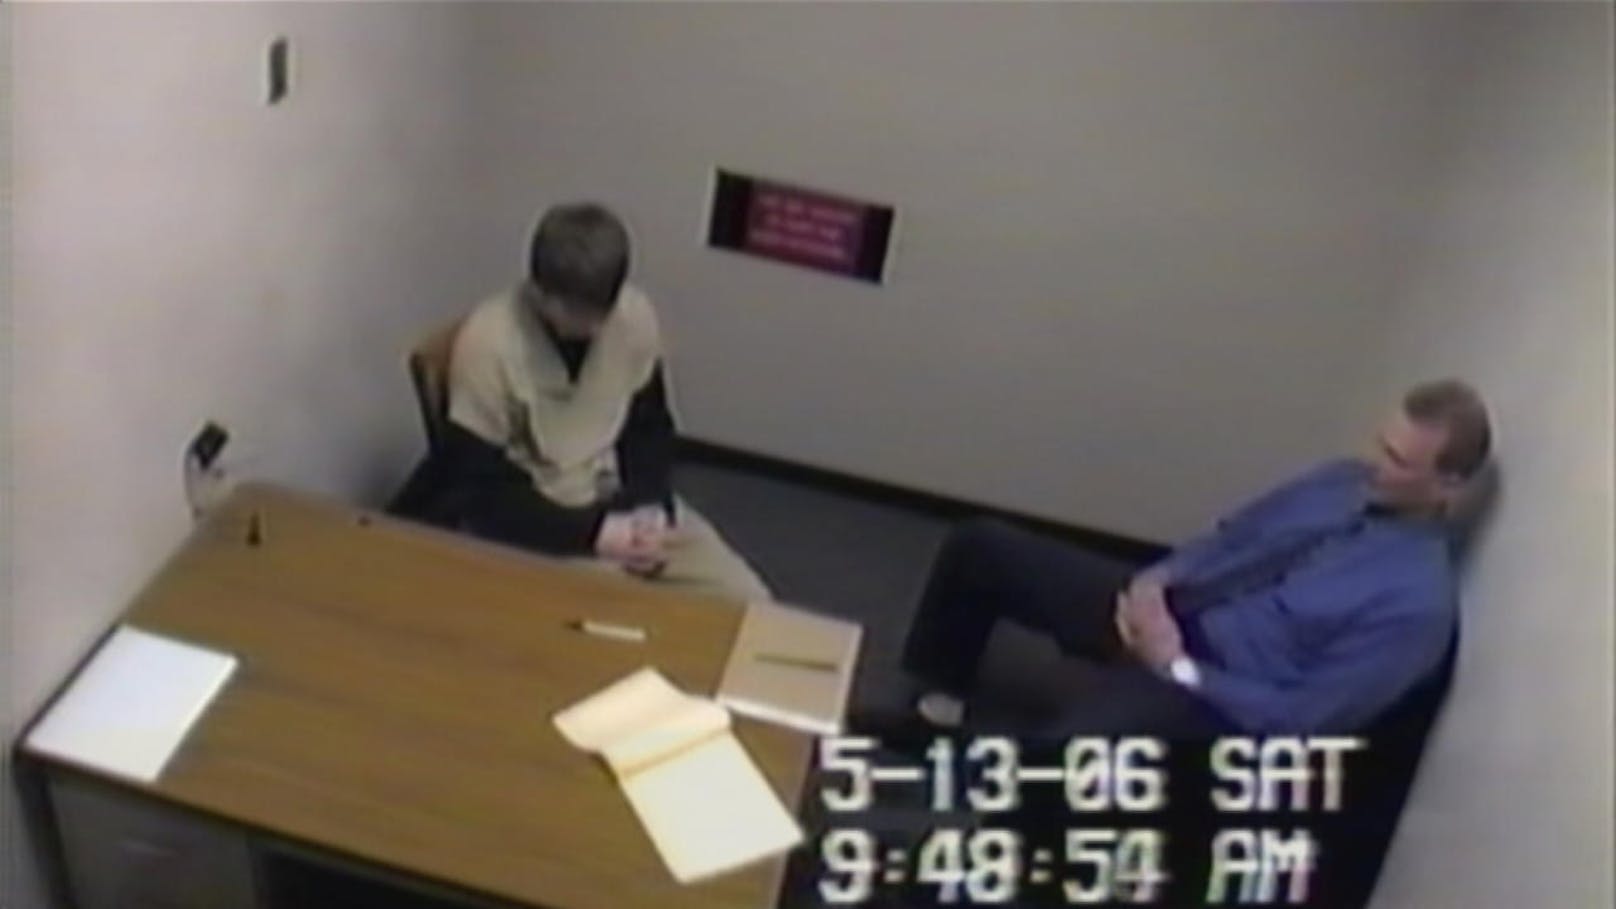 1985 wurde Steven Avery für eine Tat, die er nicht begangen hatte, eingesperrt.